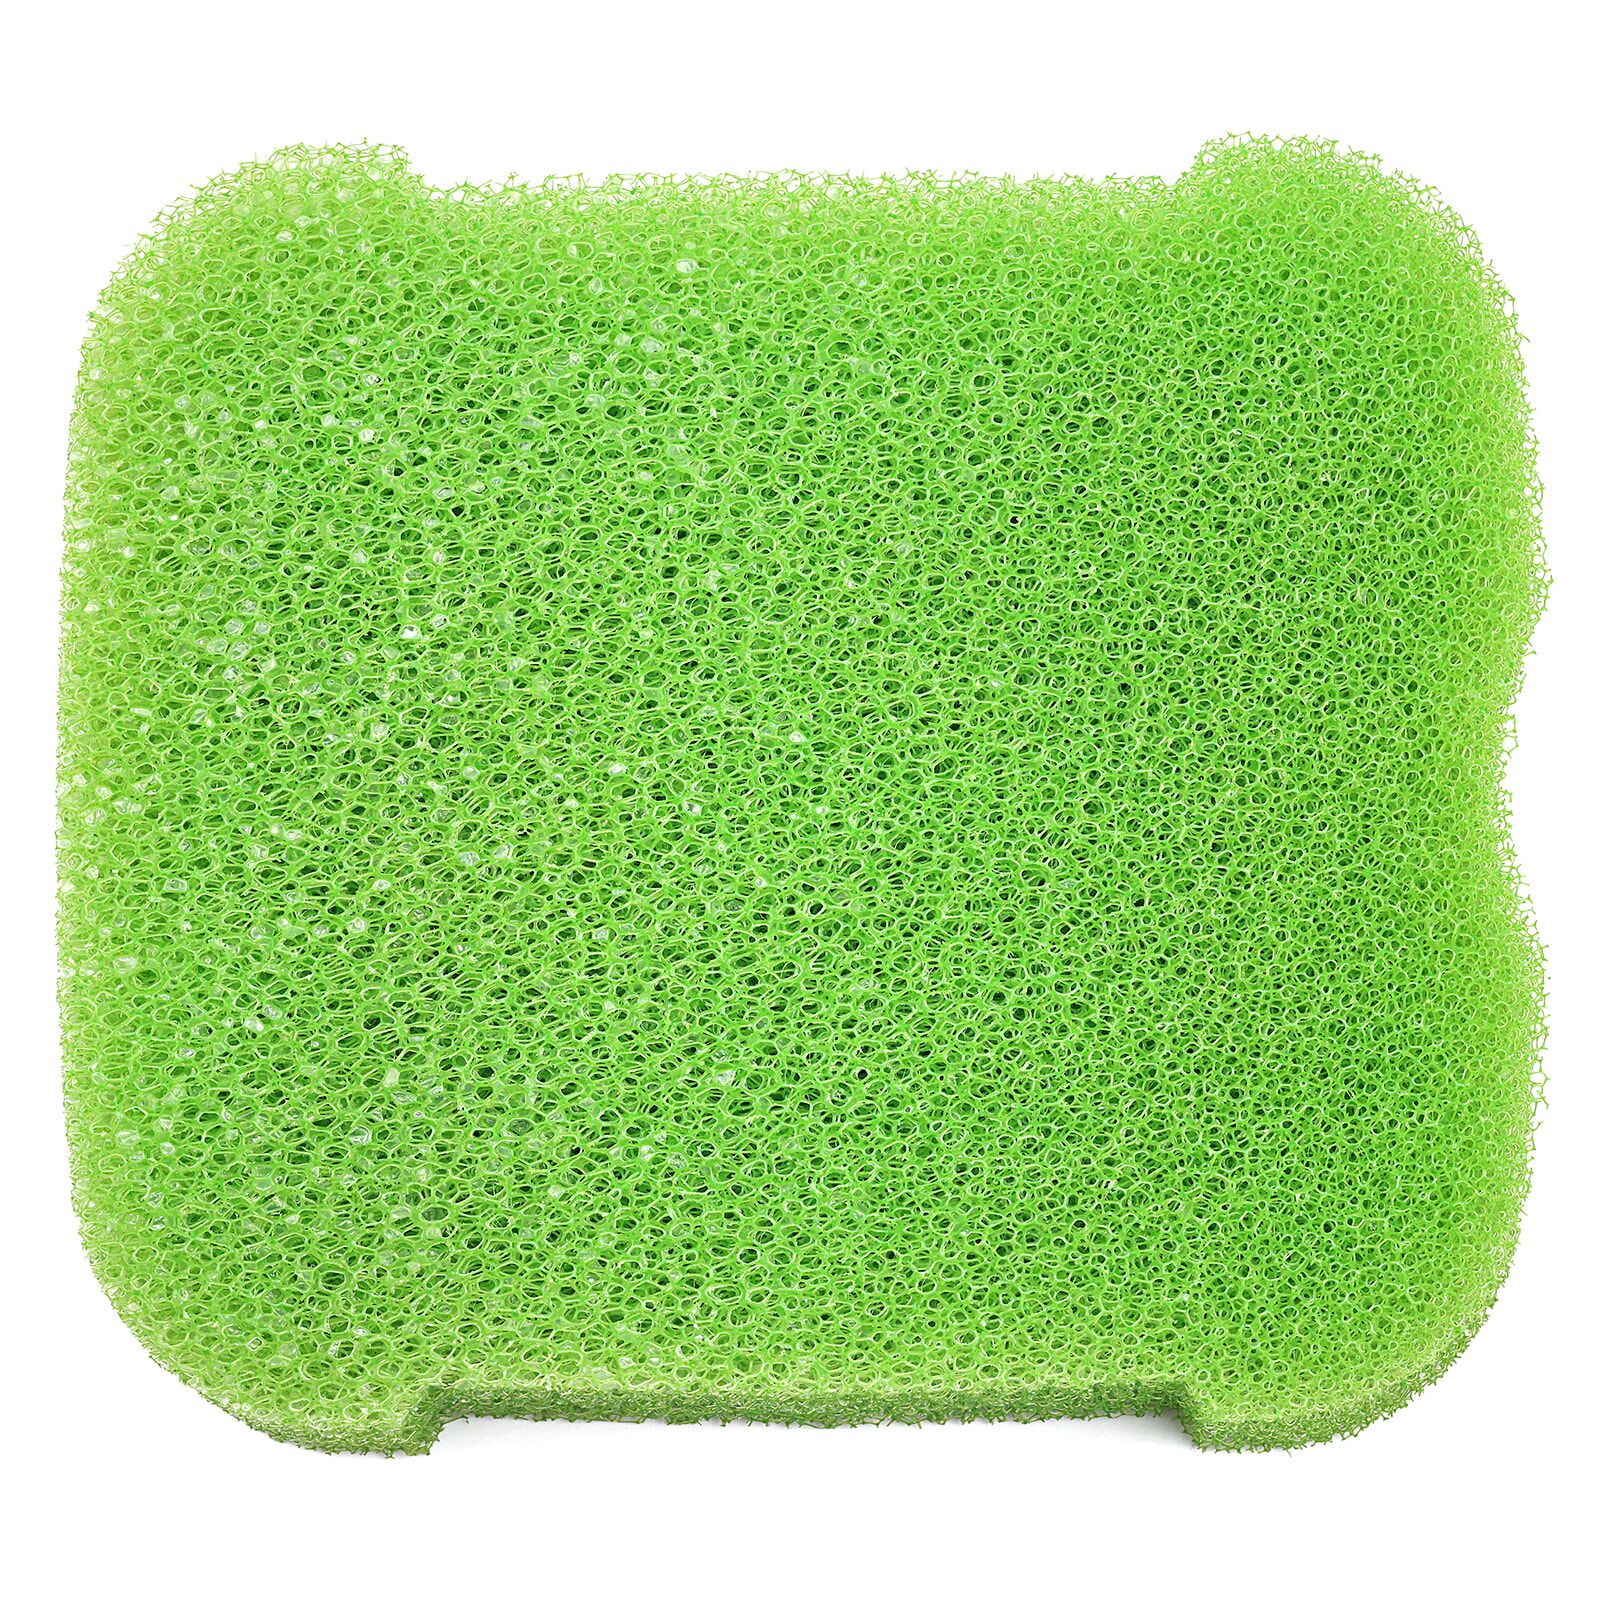 UNS - Delta - Green Sponge